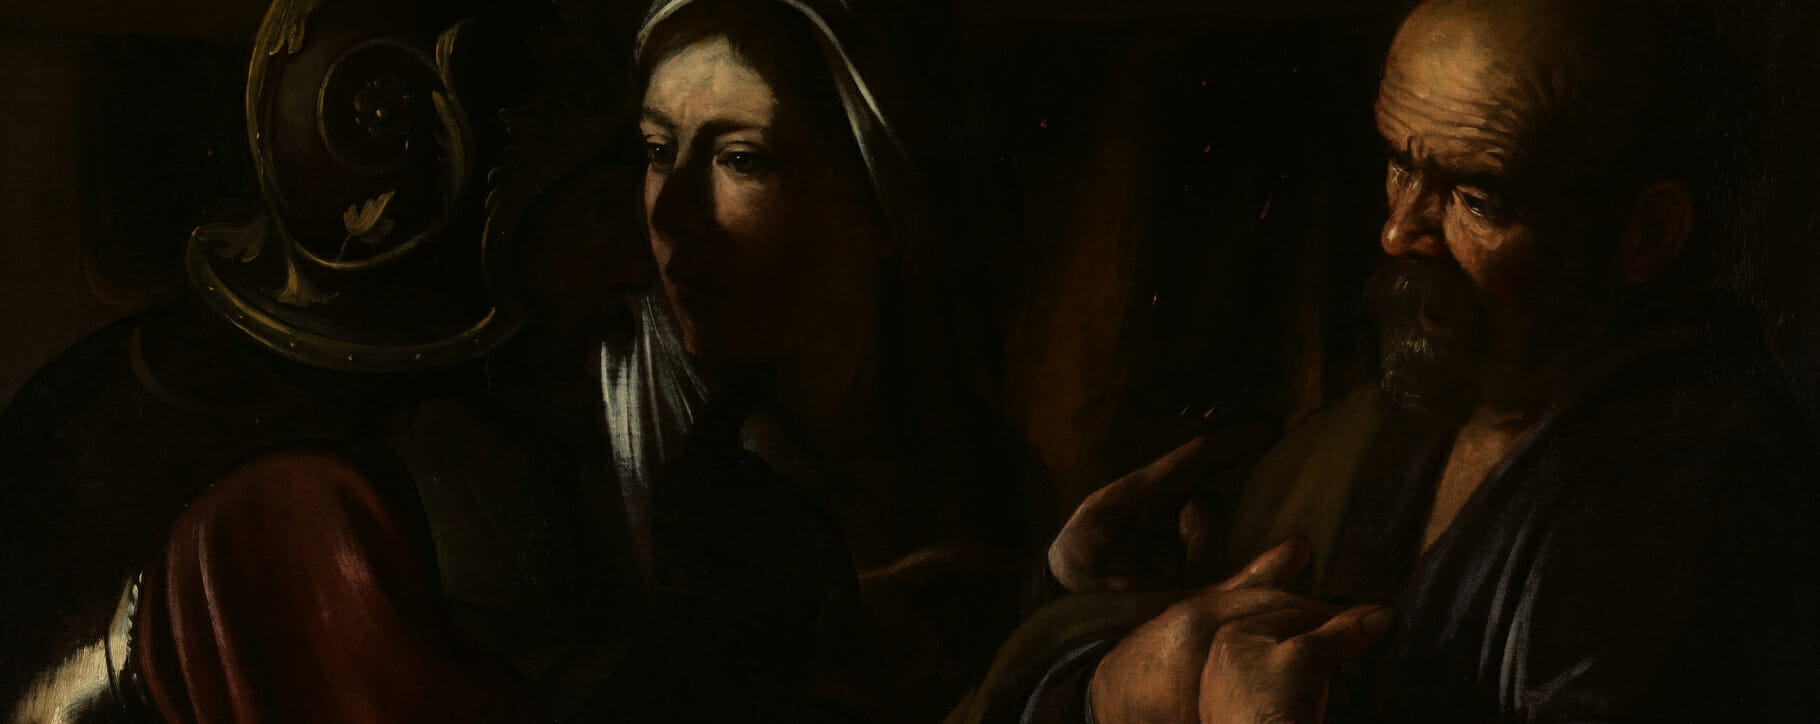 Saint Peter Caravaggio